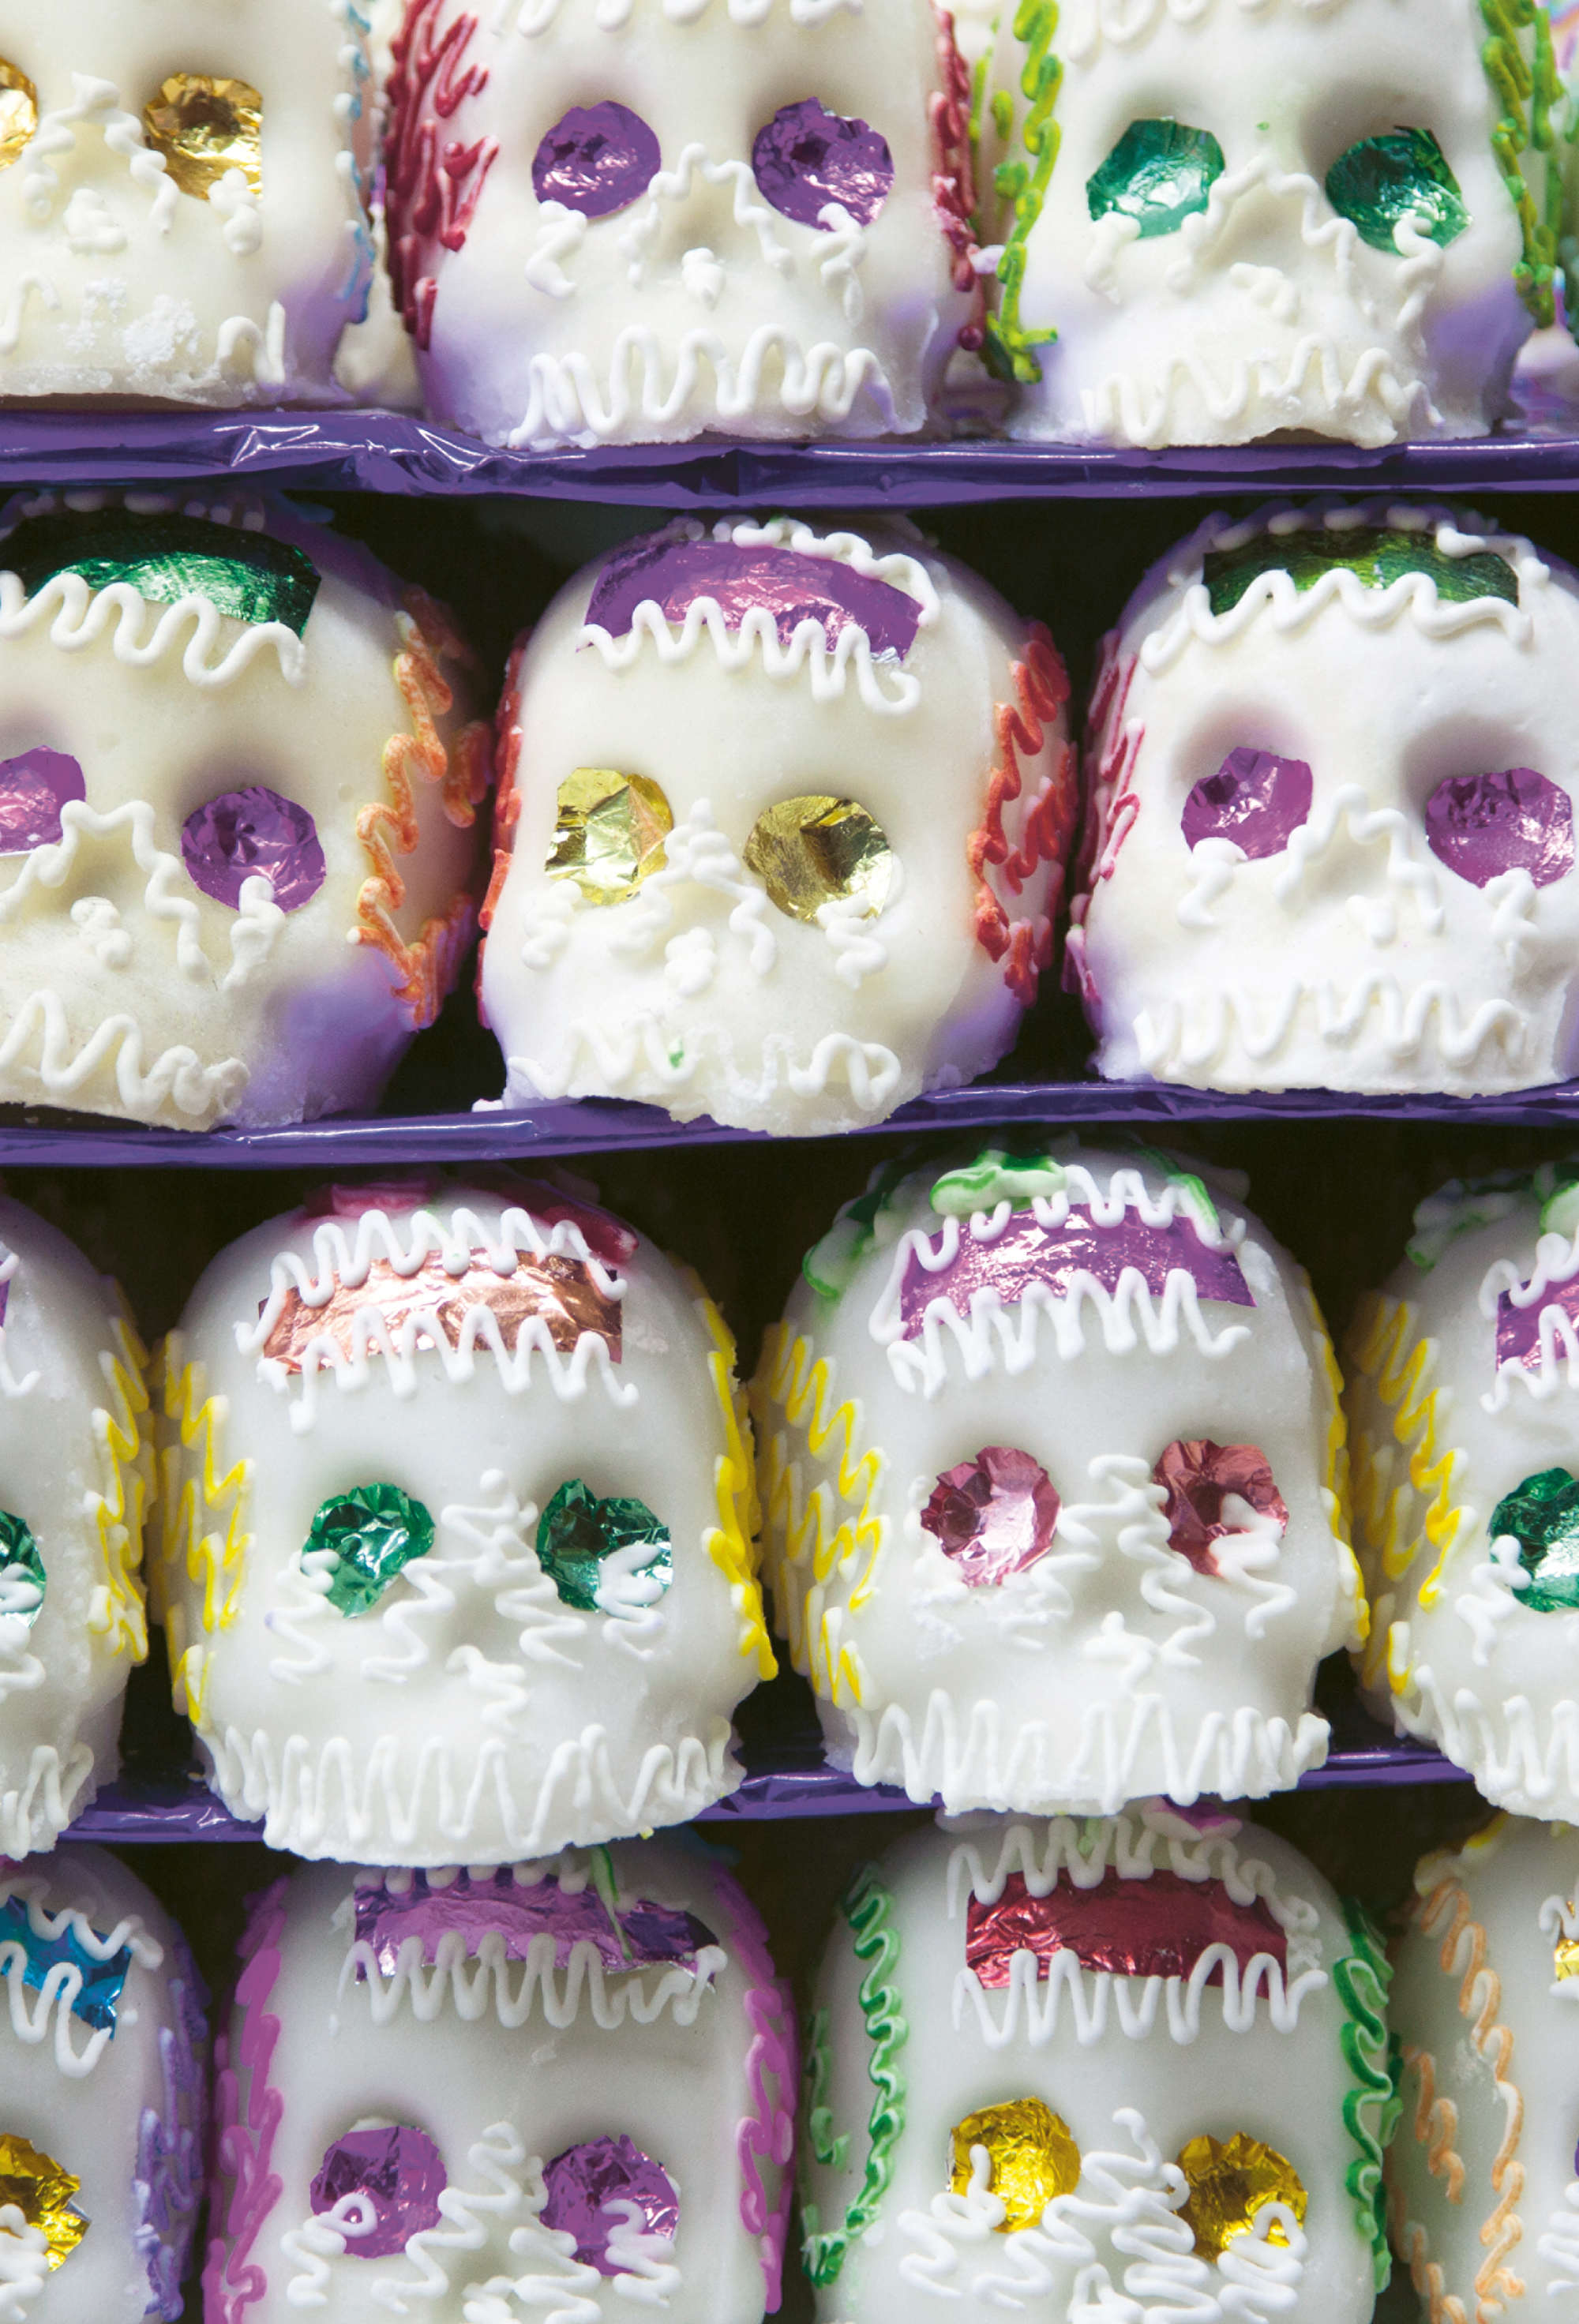 Calavera, or sugar skulls, are used to decorate the ofrendas of the deceased for Día de los Muertos in Mexico